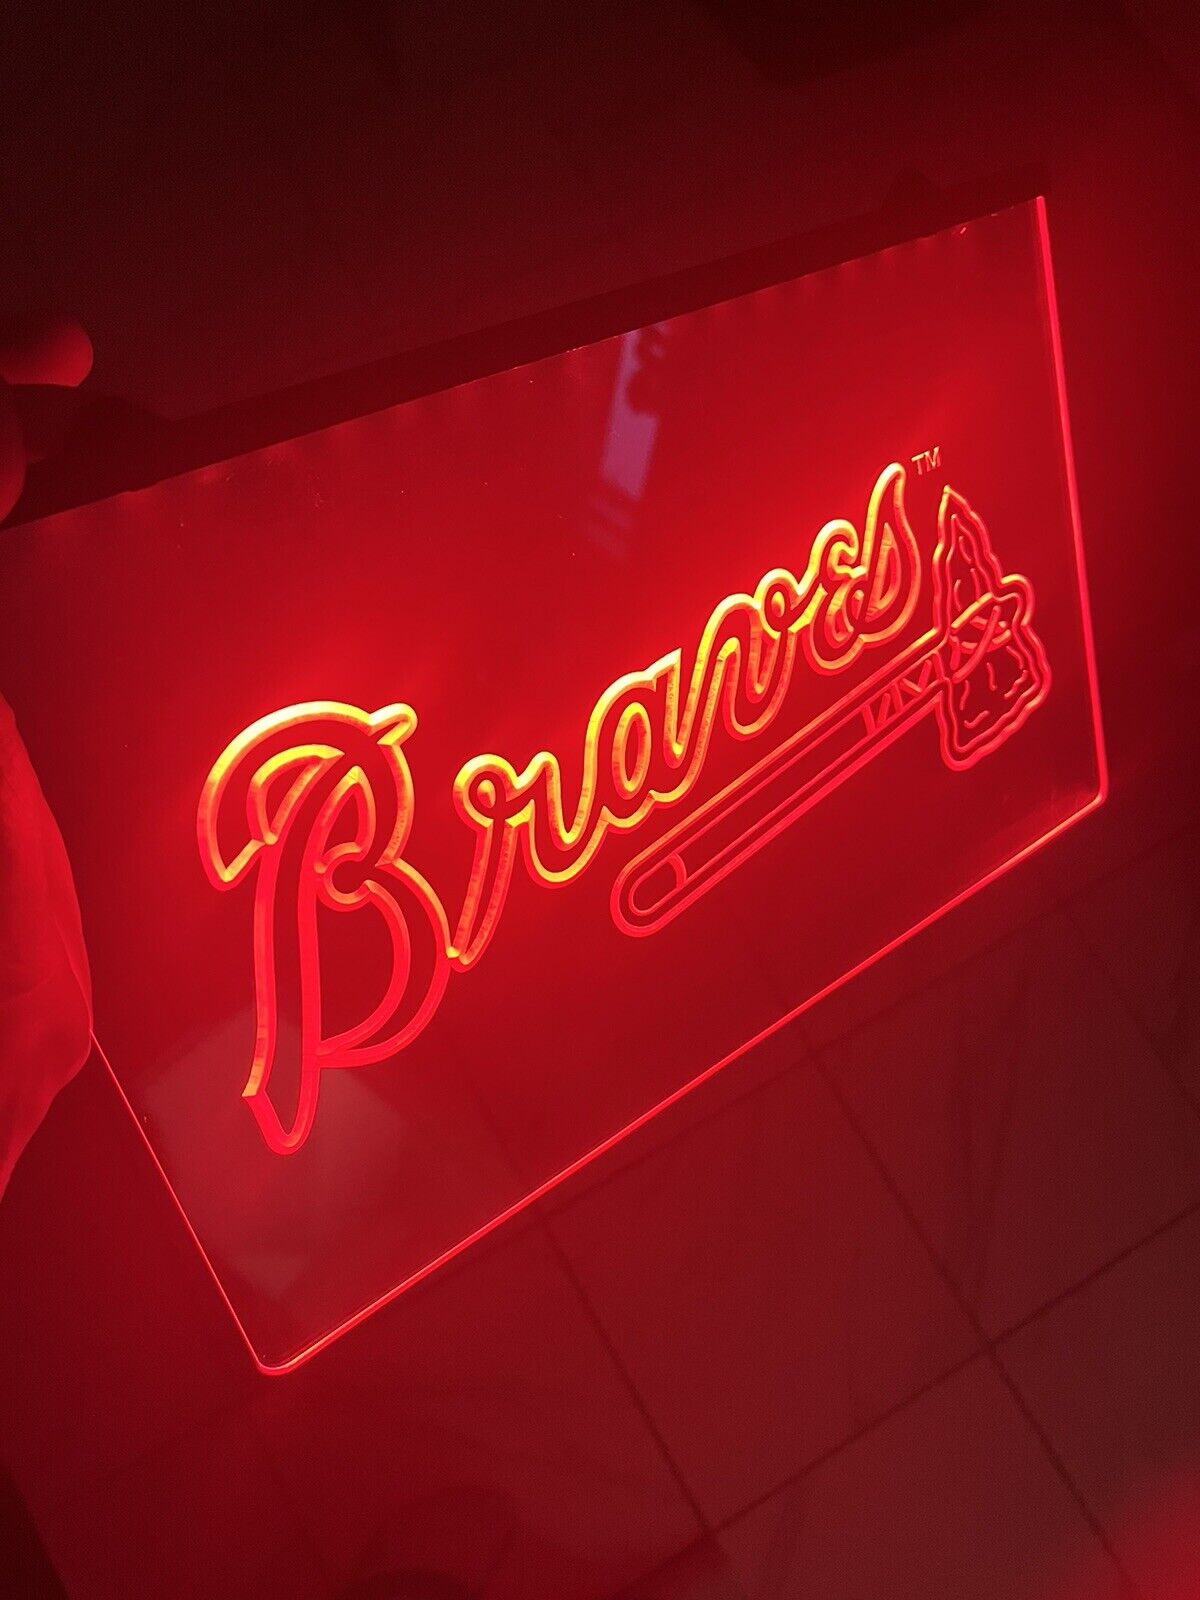 MLB ATLANTA BRAVES  LOGO LED Light Sign for Game Room,Office,Bar,Man Cave.